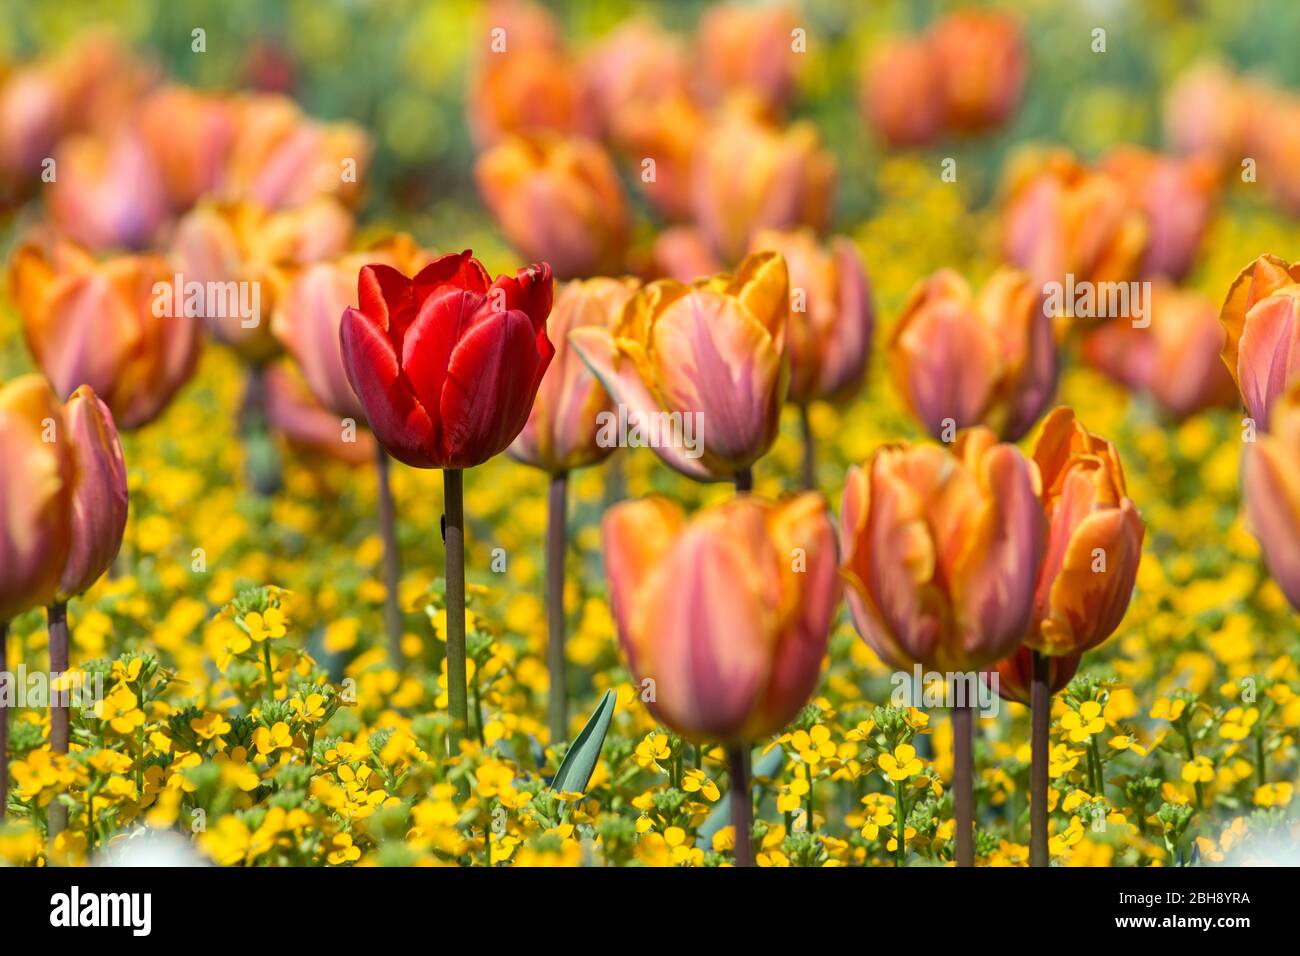 Deutschland, Baden-Württemberg, Rote Tulpe zwischen gelb-rosa Tulpen Stock Photo